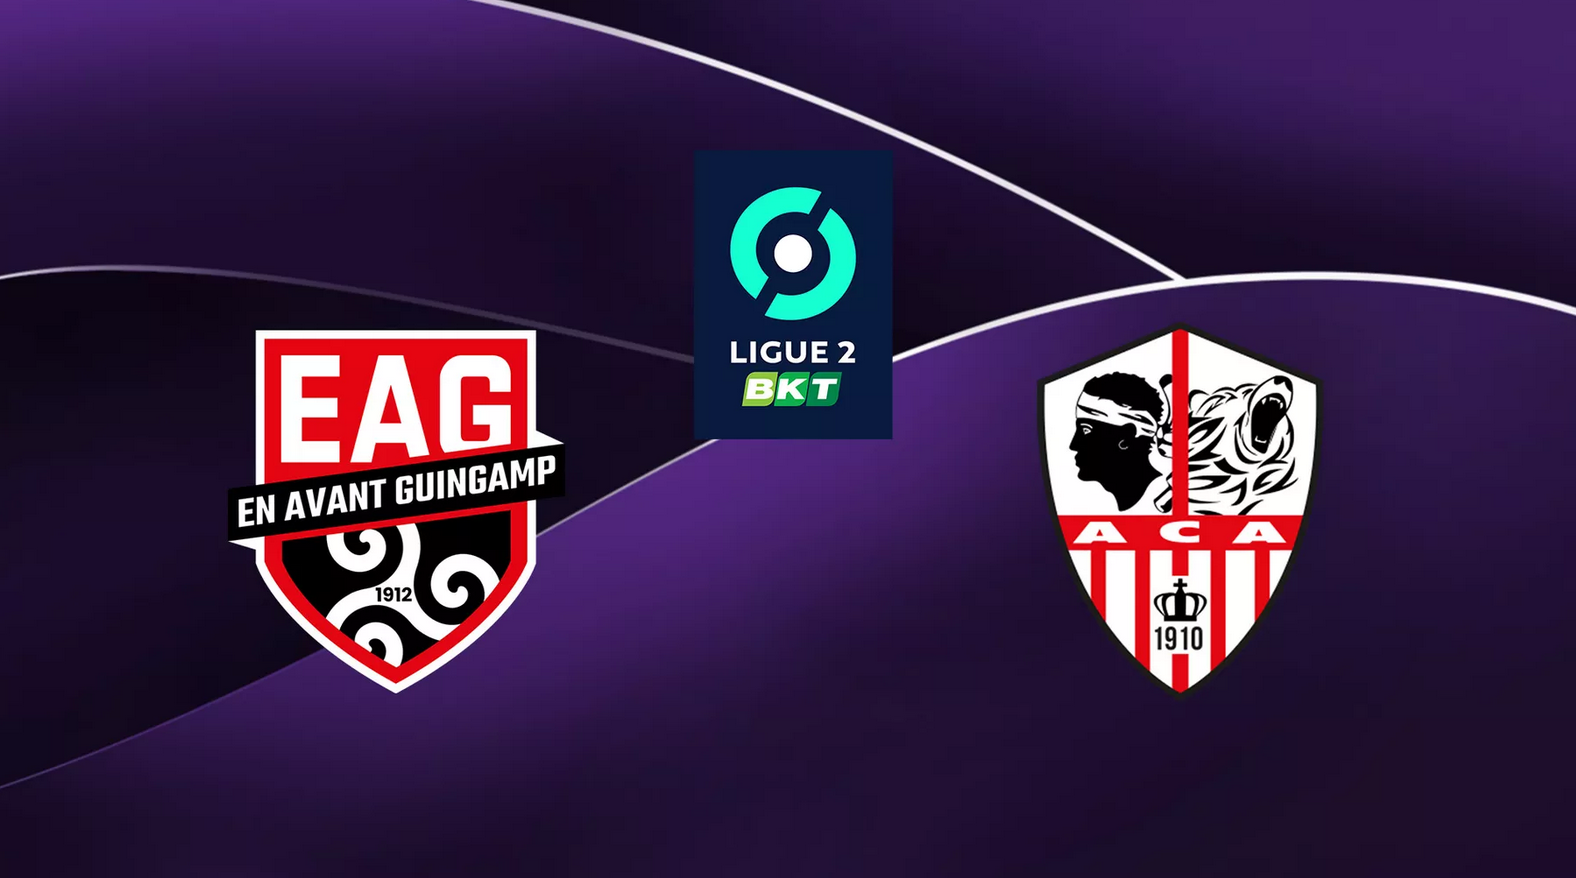 Guigamp (EAG) / Ajaccio (ACA) (TV/Streaming) Sur quelle chaîne et à quelle heure regarder le match de Ligue 2 ?